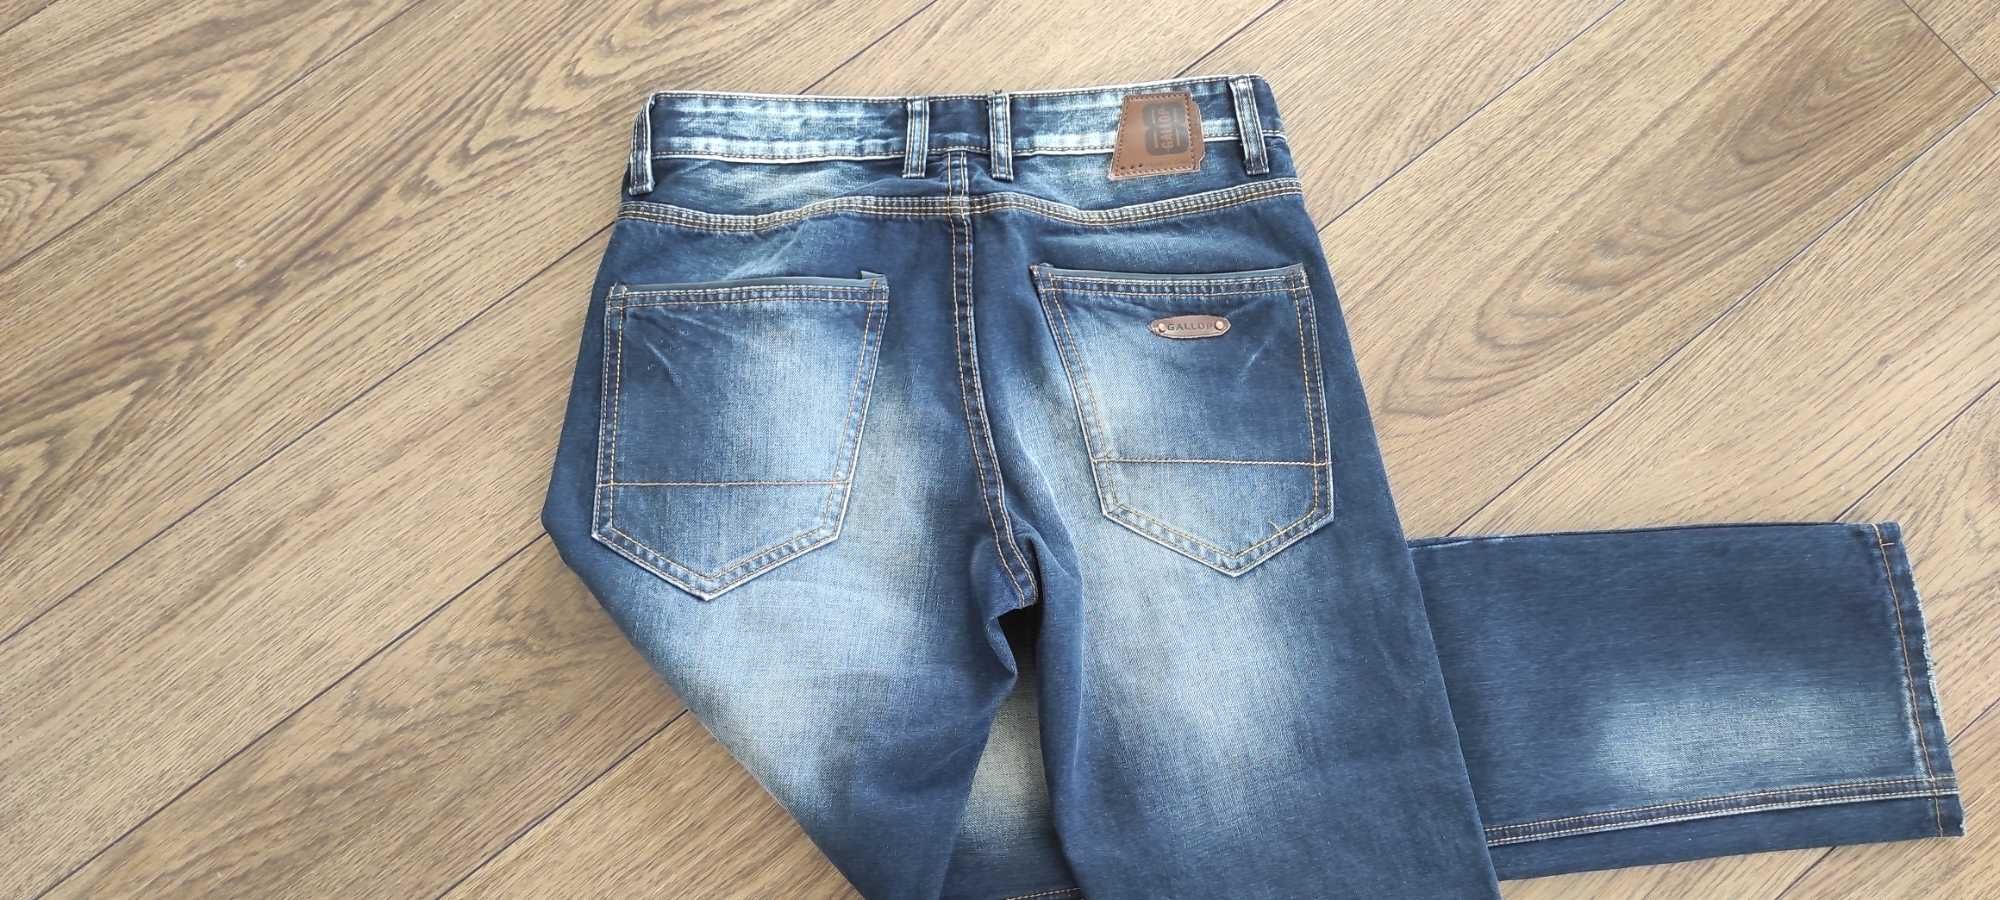 Spodnie męskie jeans rozmiar 30